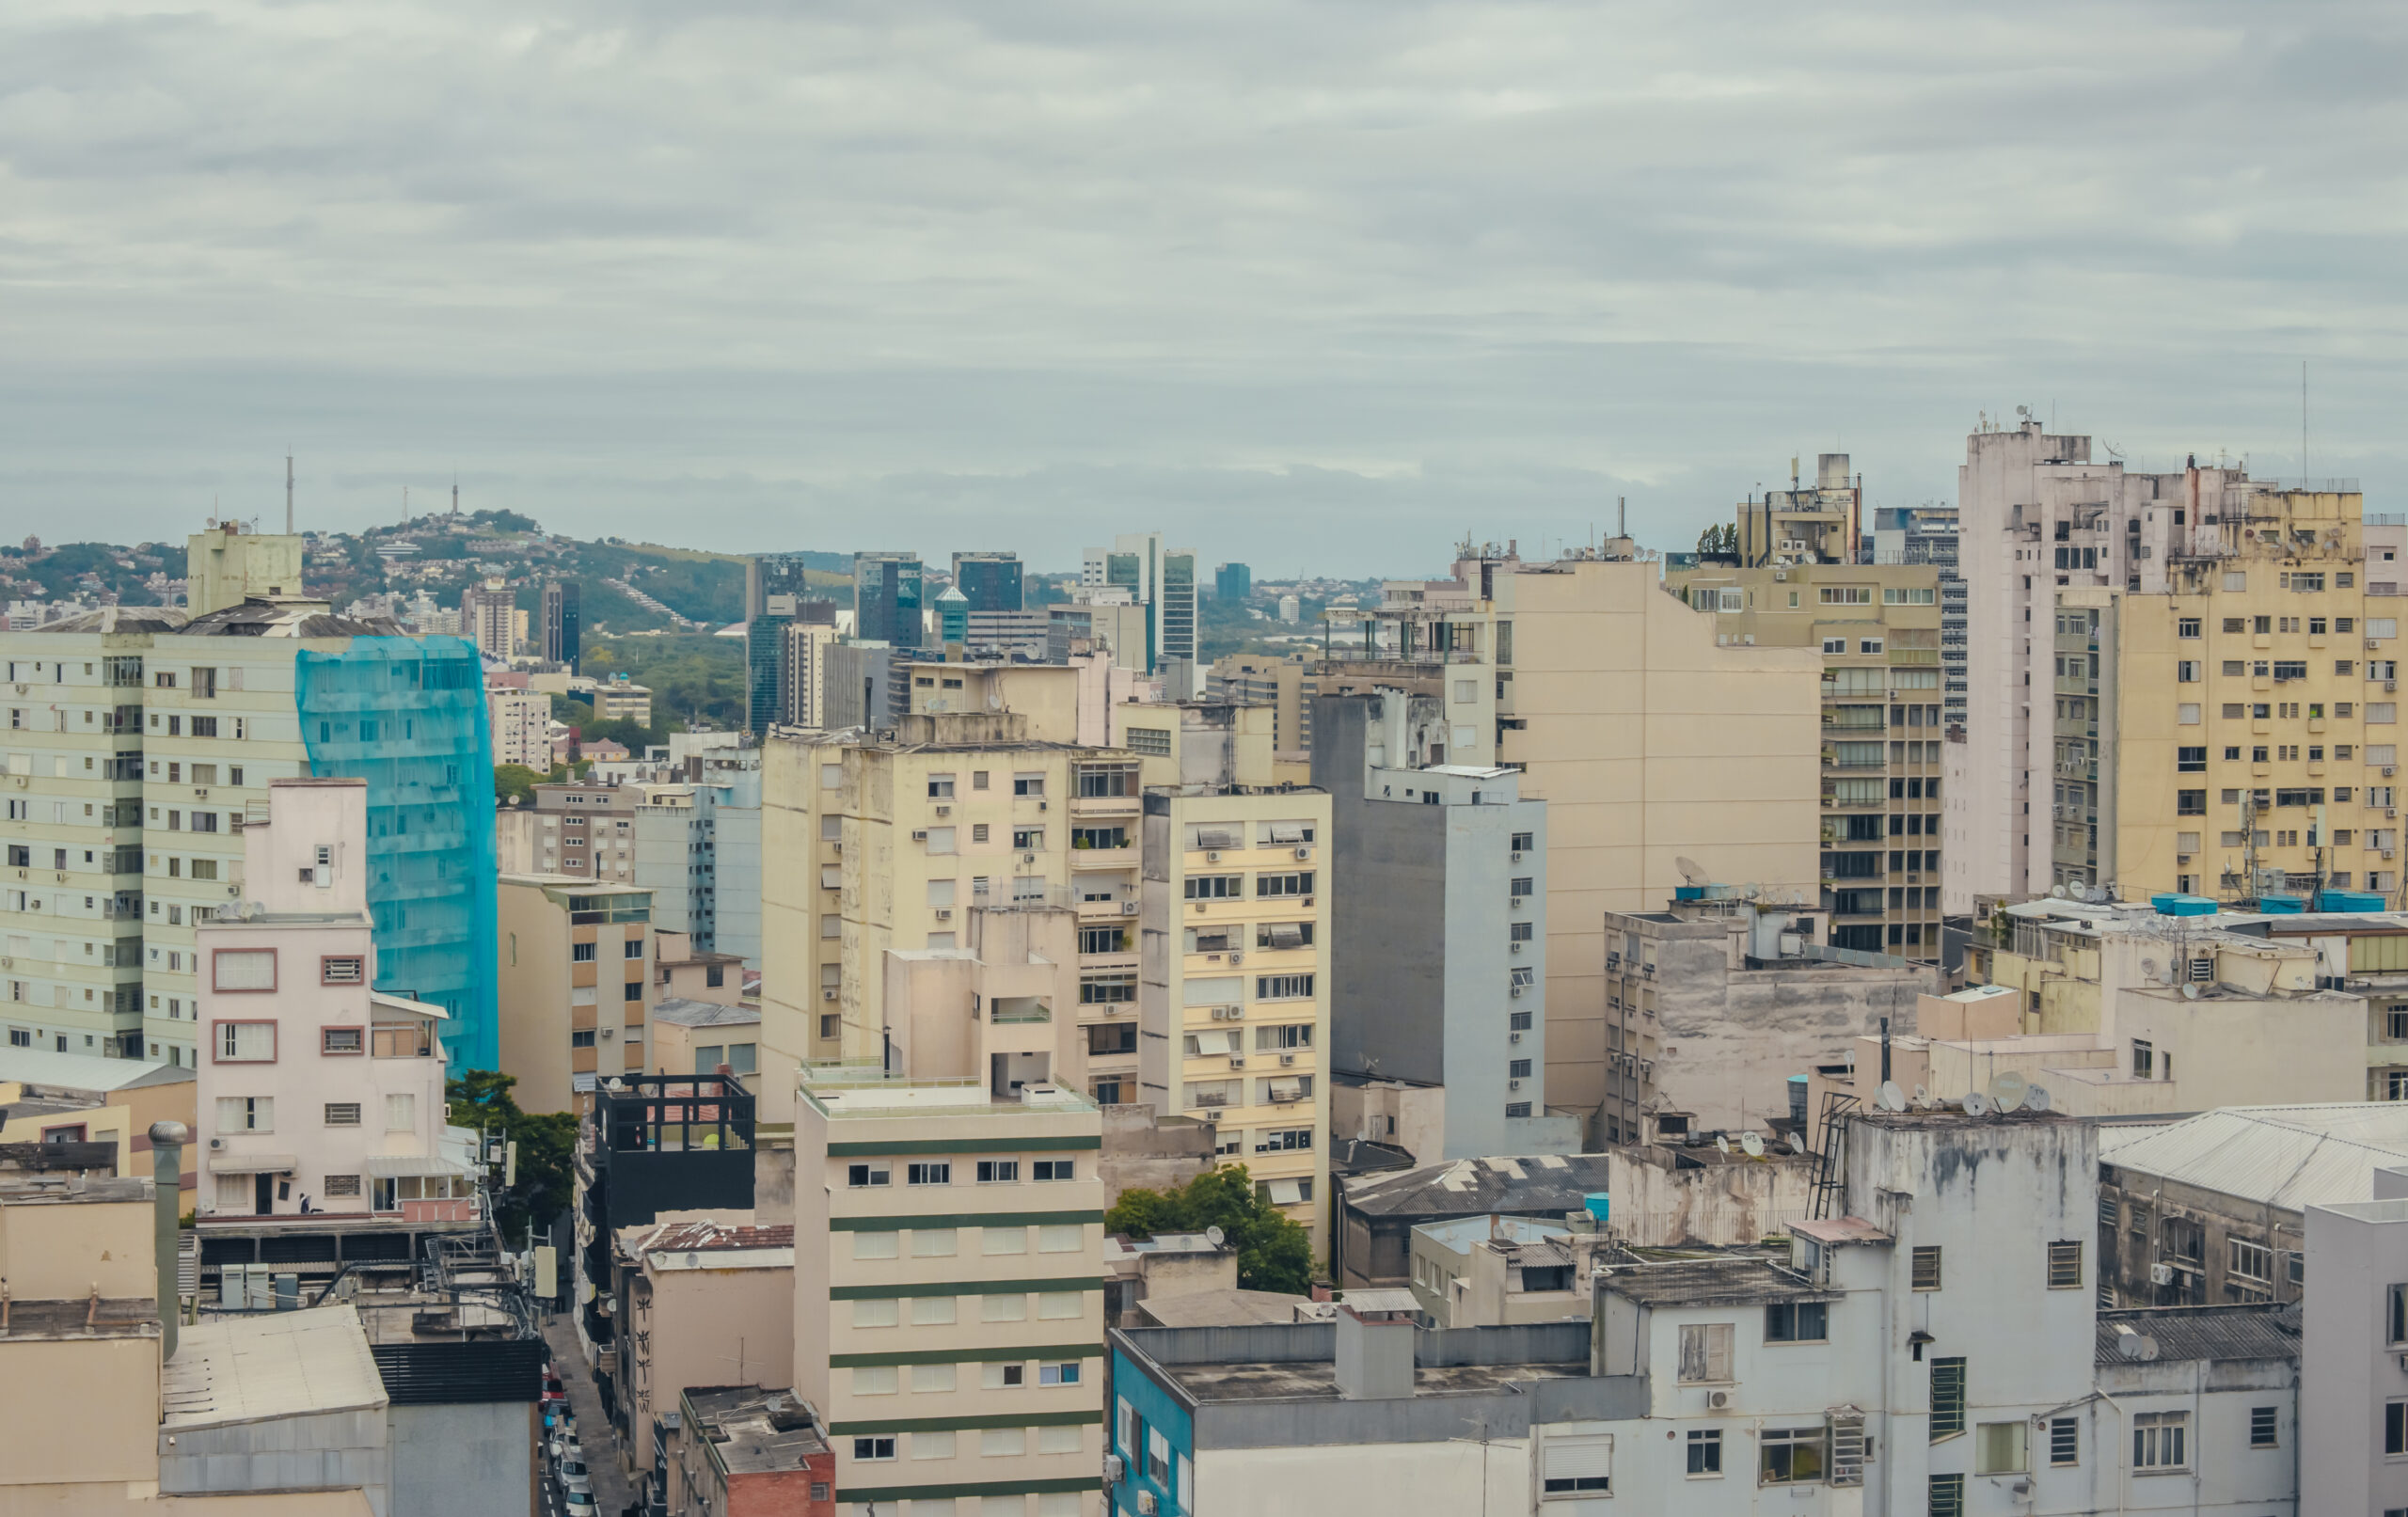 panoramic-view-city-porto-alegre-rio-grande-sul